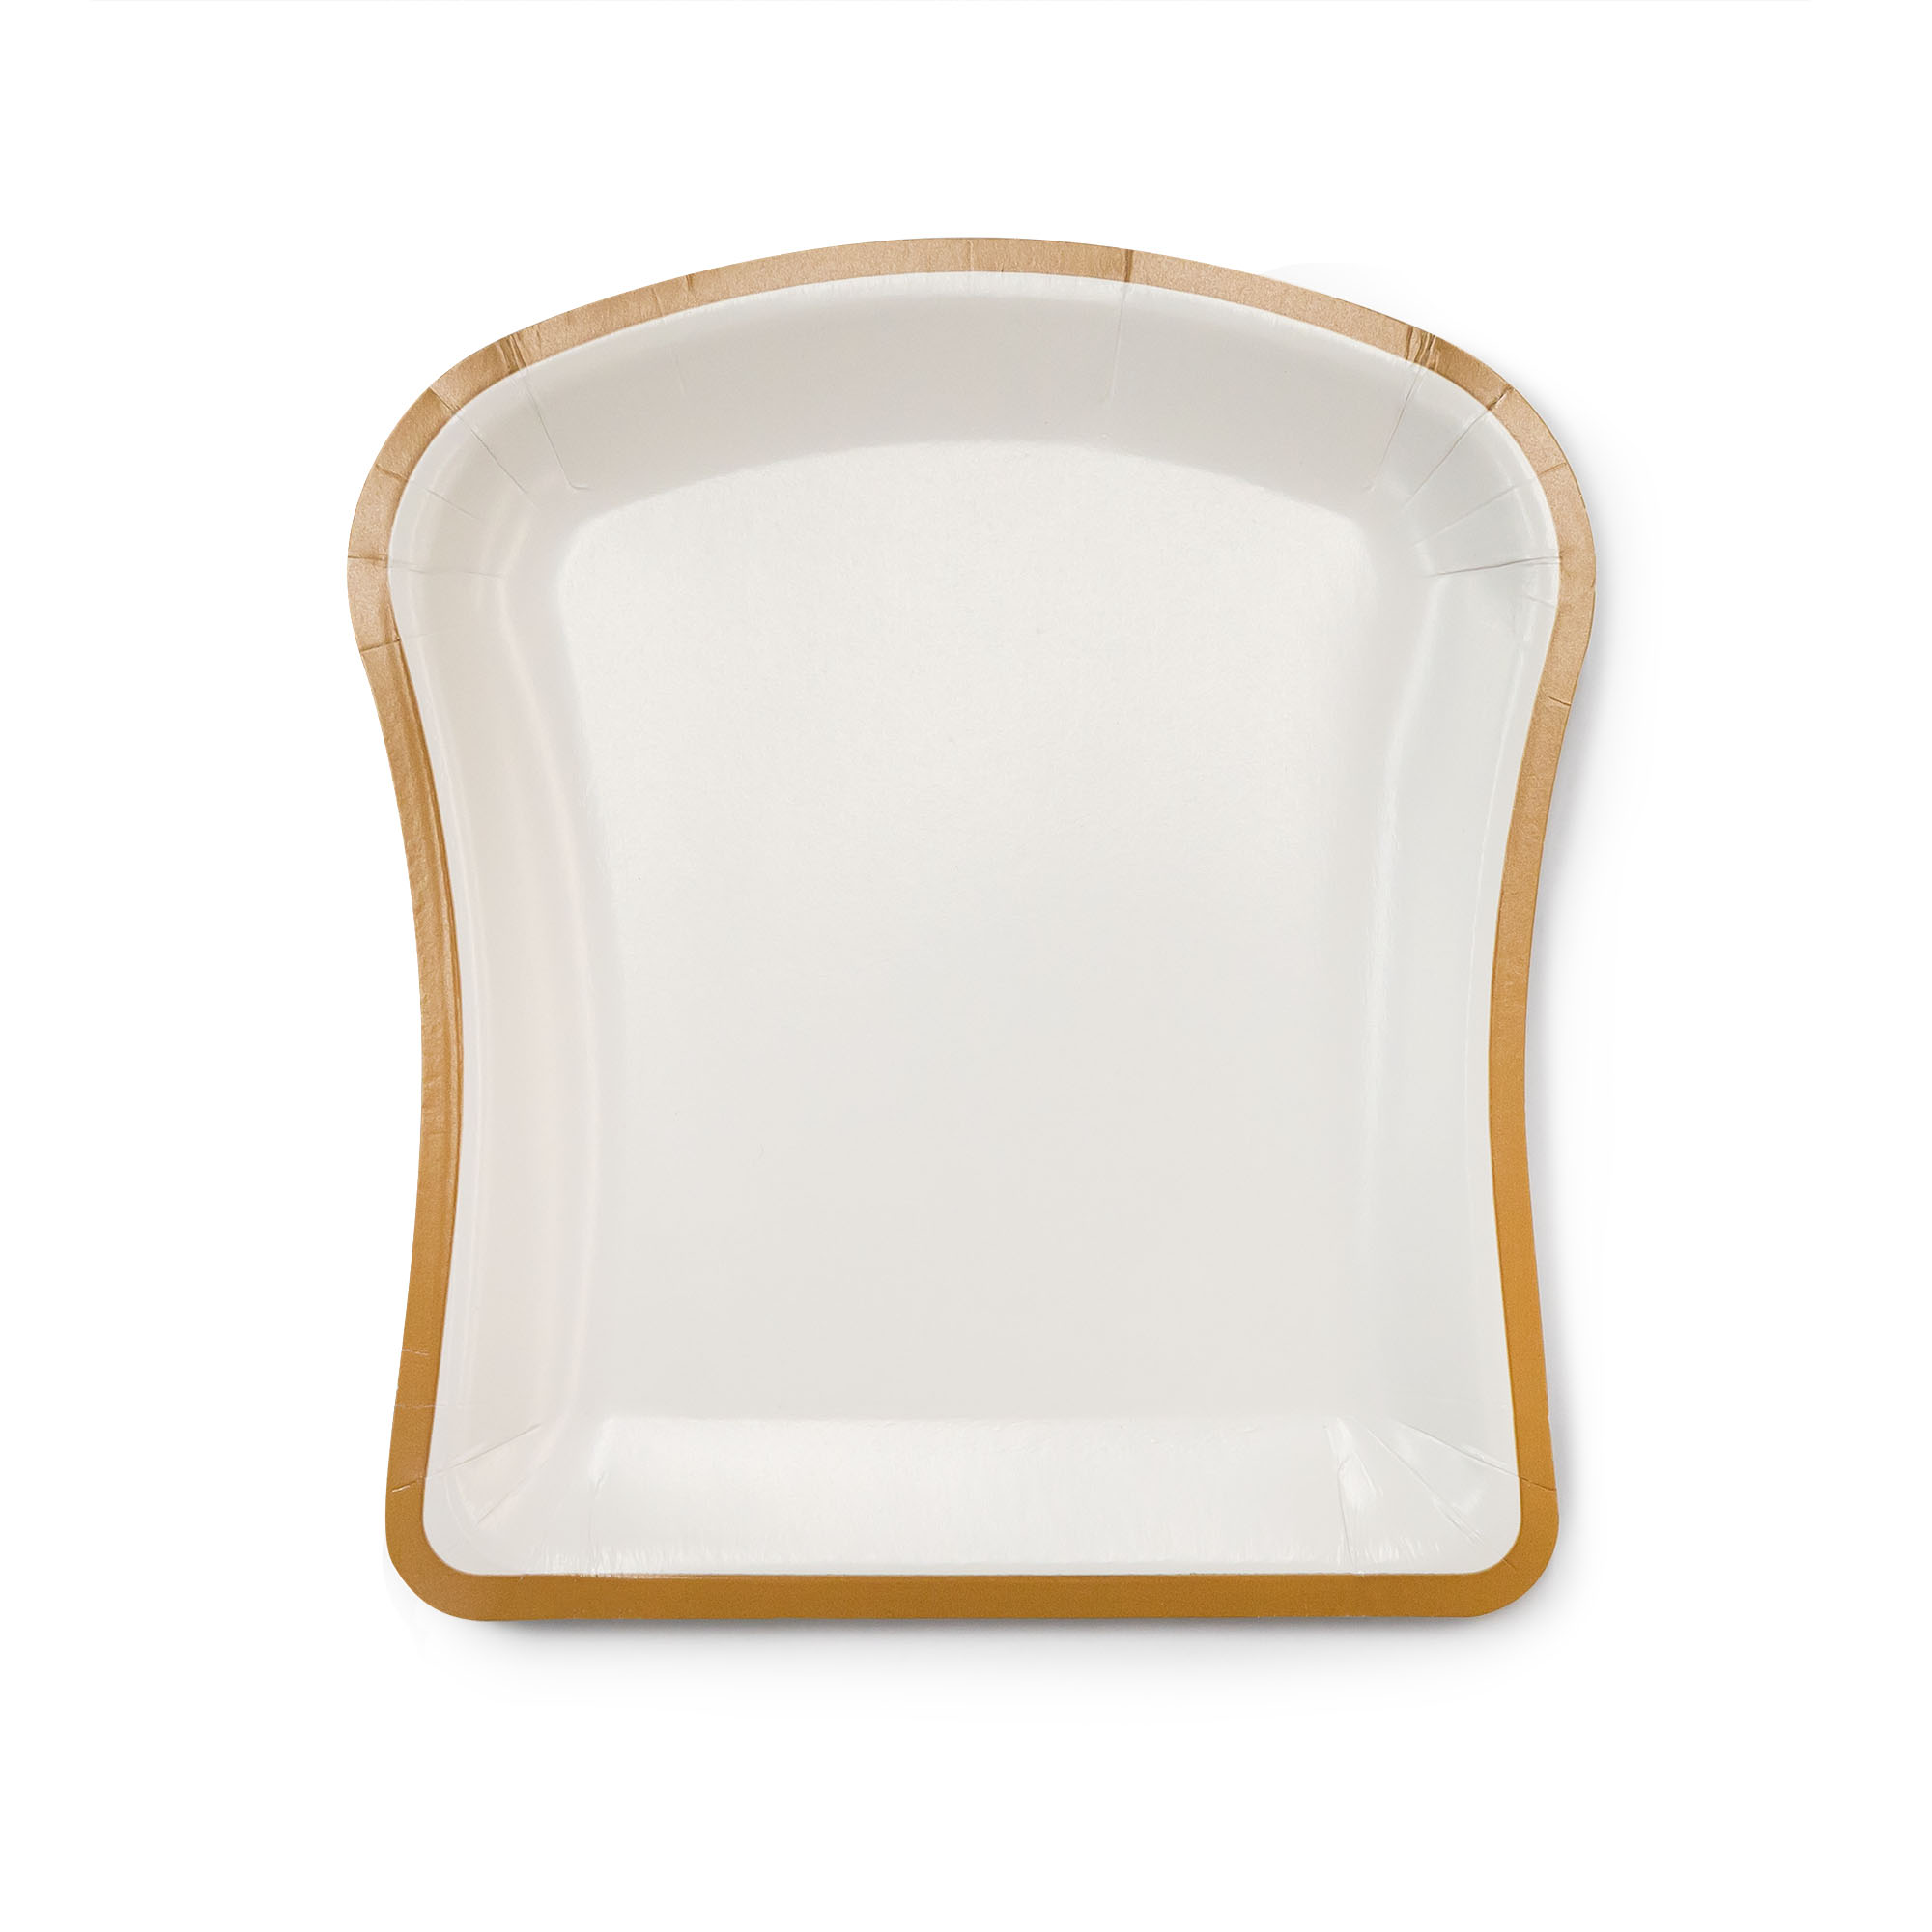 TC3B-toast-shape-cake-plate-1